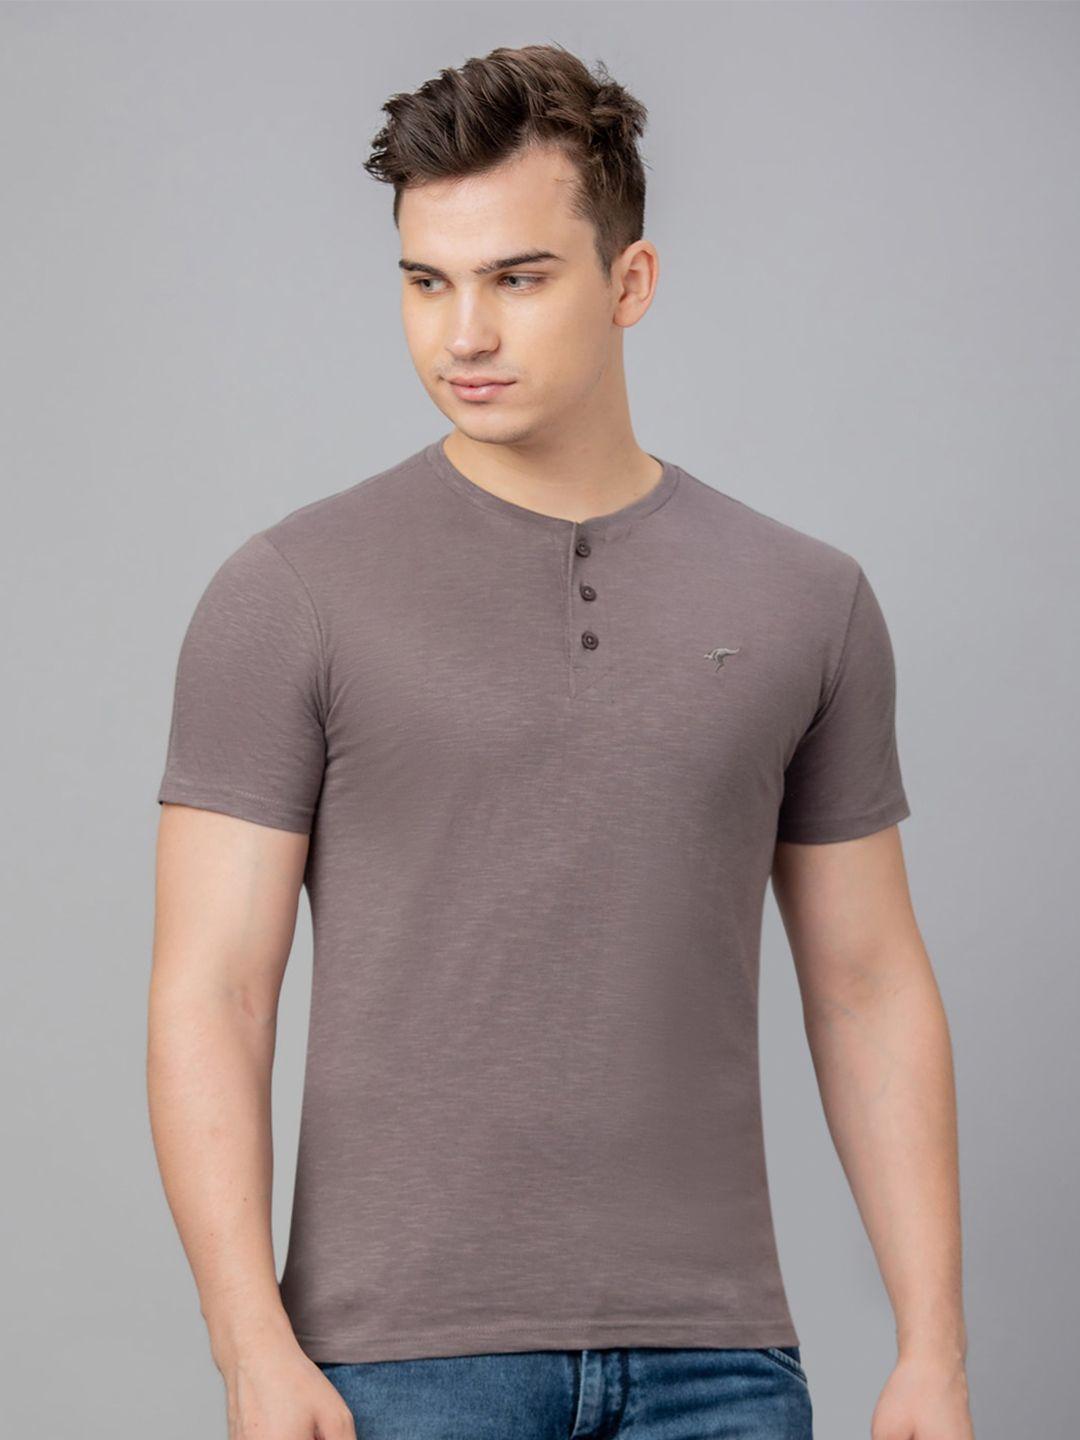 globus-henley-neck-pure-cotton-t-shirt